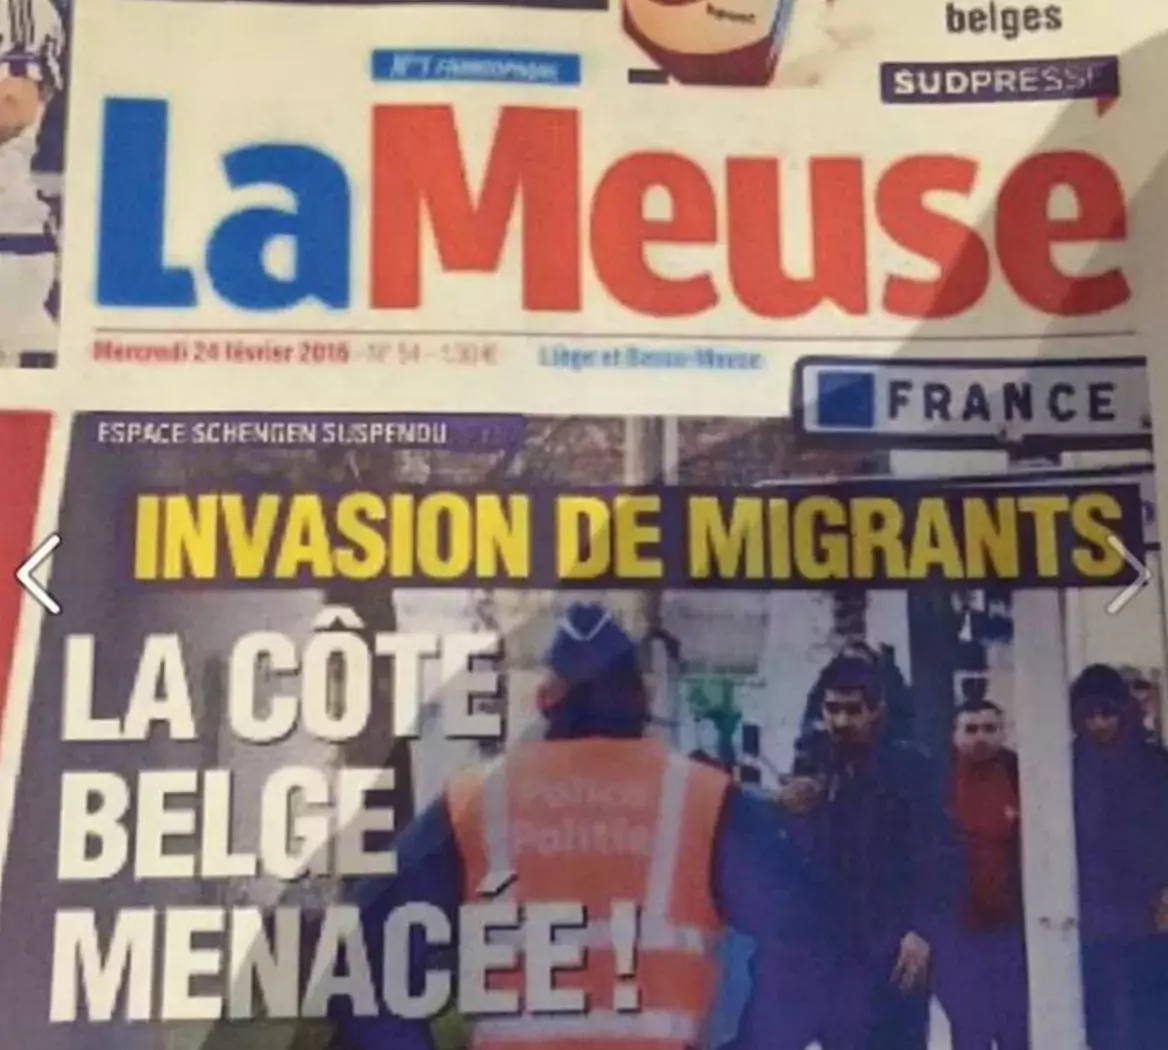 Une du groupe Sudpresse évoquant une "invasion" de la côte Belge par des migrants